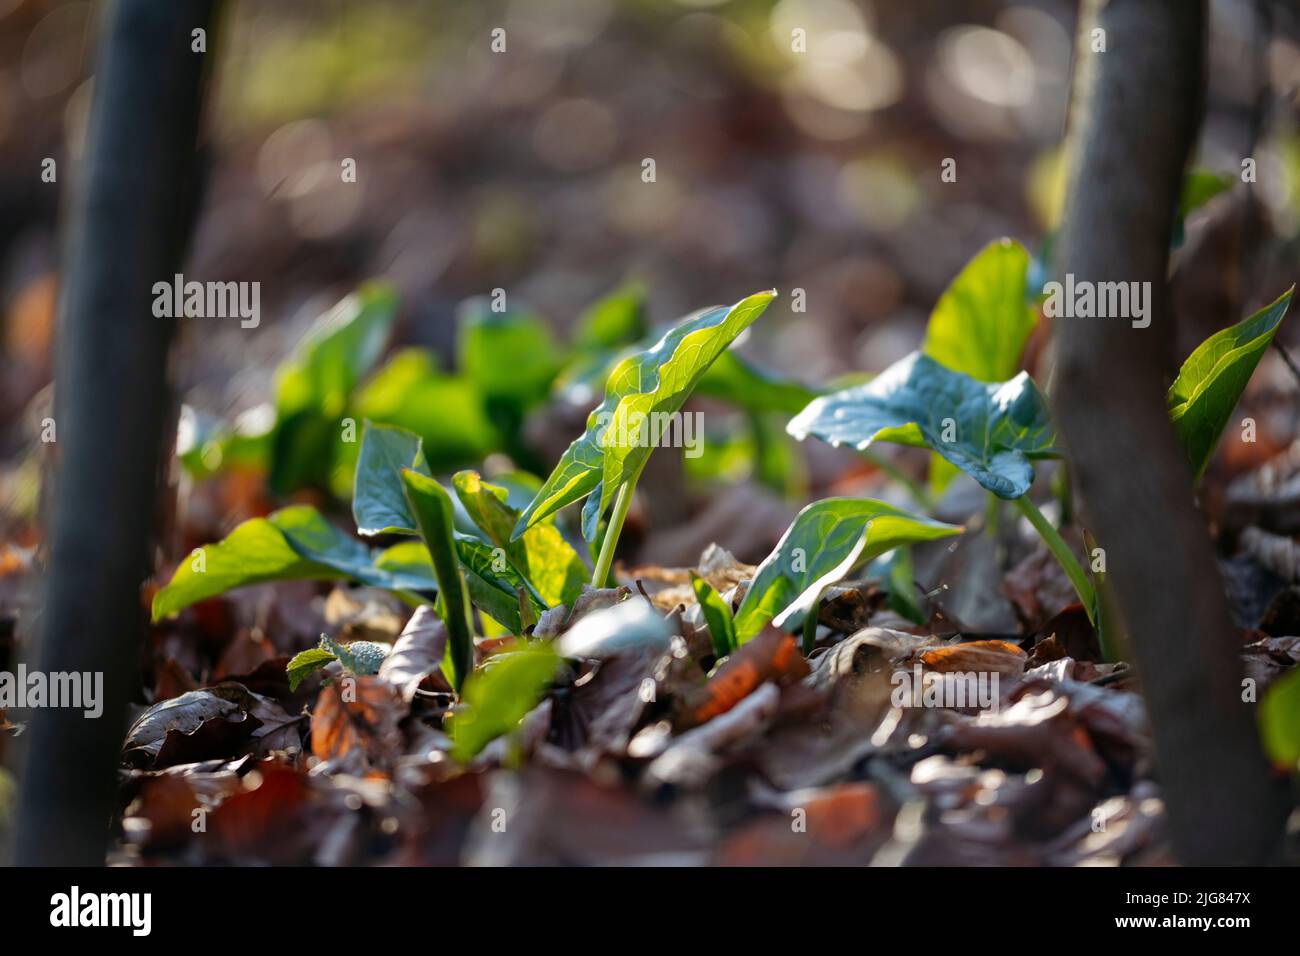 Sol forestier, arum, feuilles, détails Banque D'Images